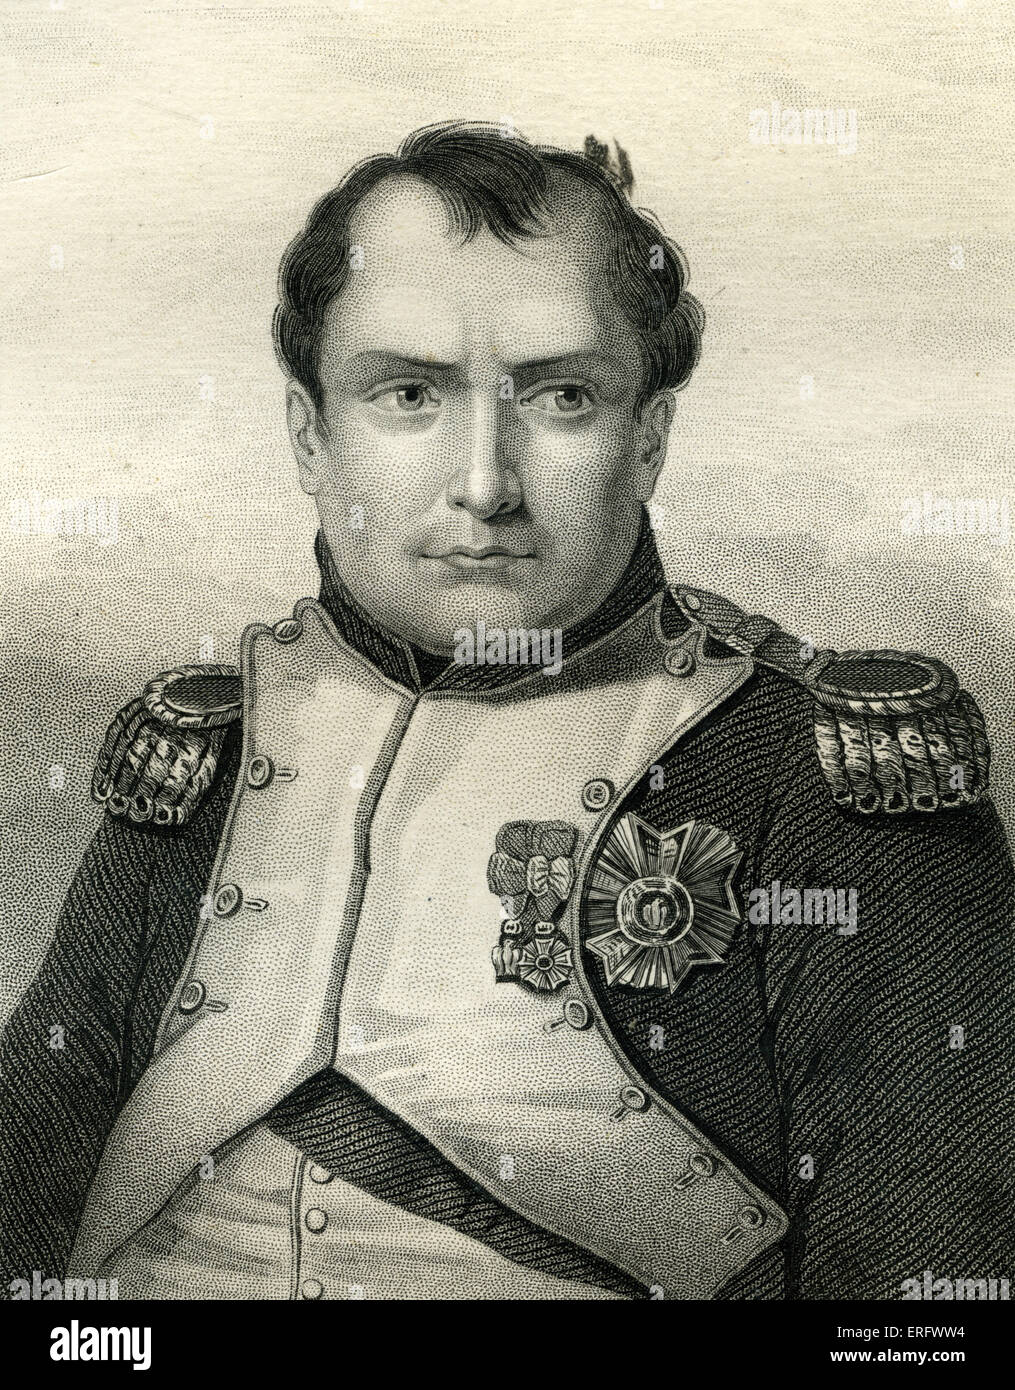 Napoleón Bonaparte (1769 - 1821), se levantó a la prominencia como un general de la Revolución Francesa. En 1799, Napoleón da un golpe de estado Foto de stock